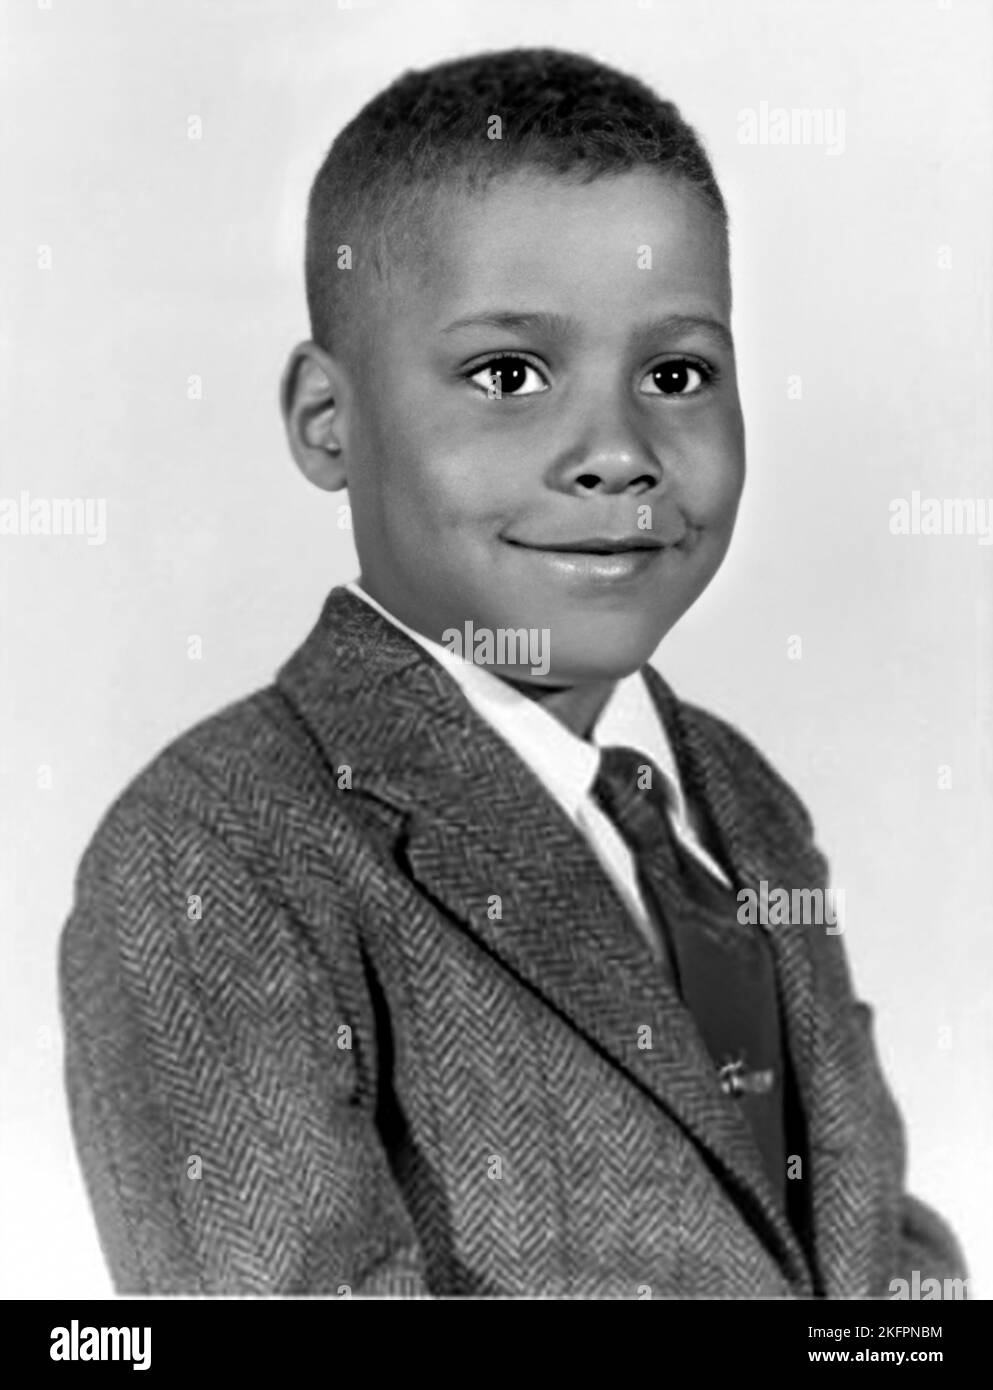 1962 ca , USA : l'attore americano BILL NUNN ( 1953 - 2016 ), 9 anni, foto dell'Annuario della High School . Fotografo sconosciuto .- STORIA - FOTO STORICHE - ATTORE - FILM - CINEMA - personalità da giovane giovani - personalità quando era giovane - bambino - RITRATTO - RITRATTO - ADOLESCENTE - BAMBINI - BAMBINO - Bambini - INFANZIA - INFANZIA - cravatta - cravatta -- - ARCHIVIO GBB Foto Stock